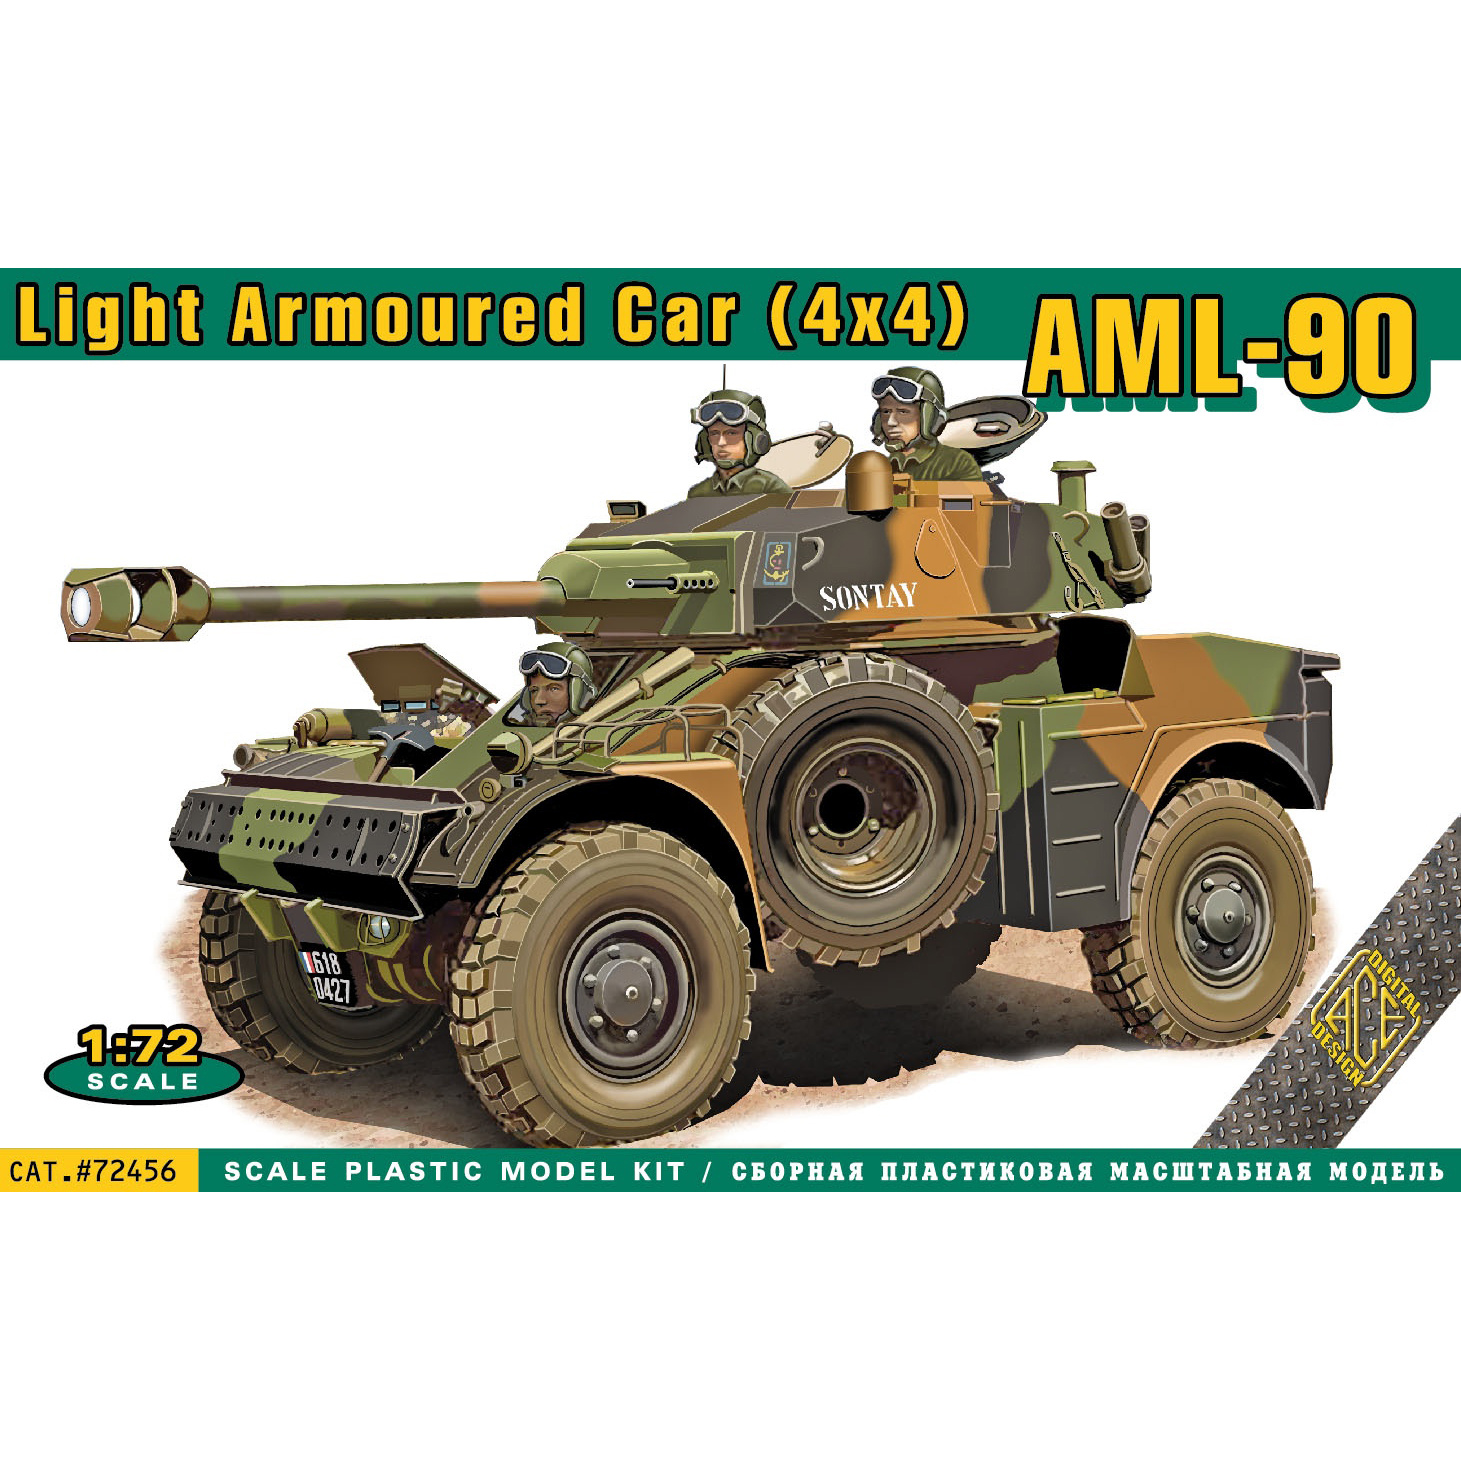 72456 ACE 1/72 Лёгкий бронированный автомобиль AML-90 (4x4)